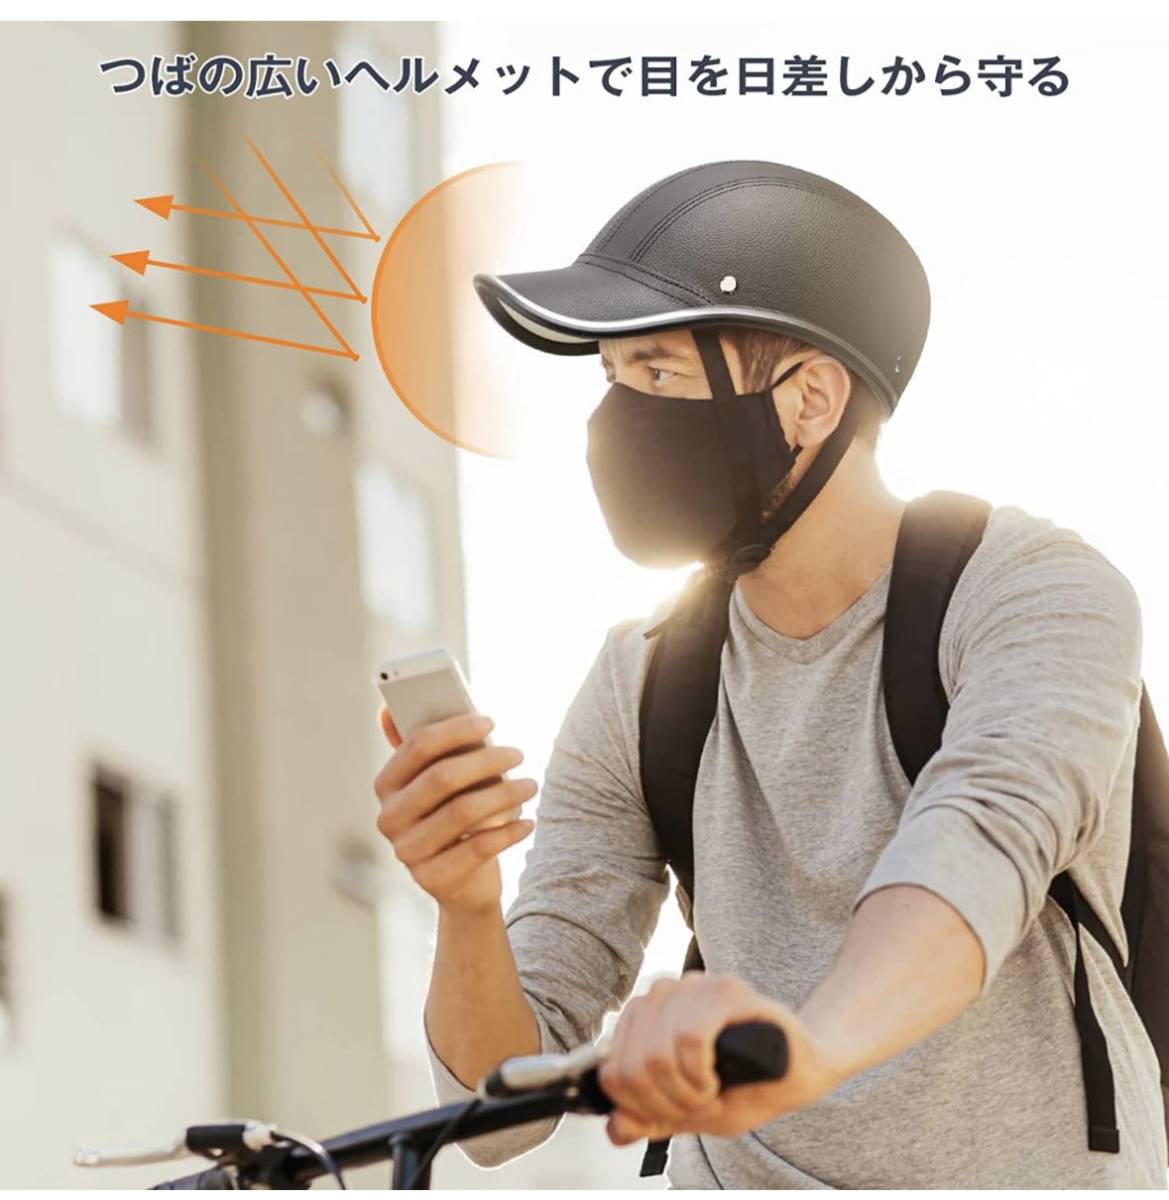 自転車 ヘルメット 大人用 耐紫外線性 アーバン ベースボール 帽子 スタイル 男性用 女性用 ロードバイク ヘルメット 超軽量安全性_画像2